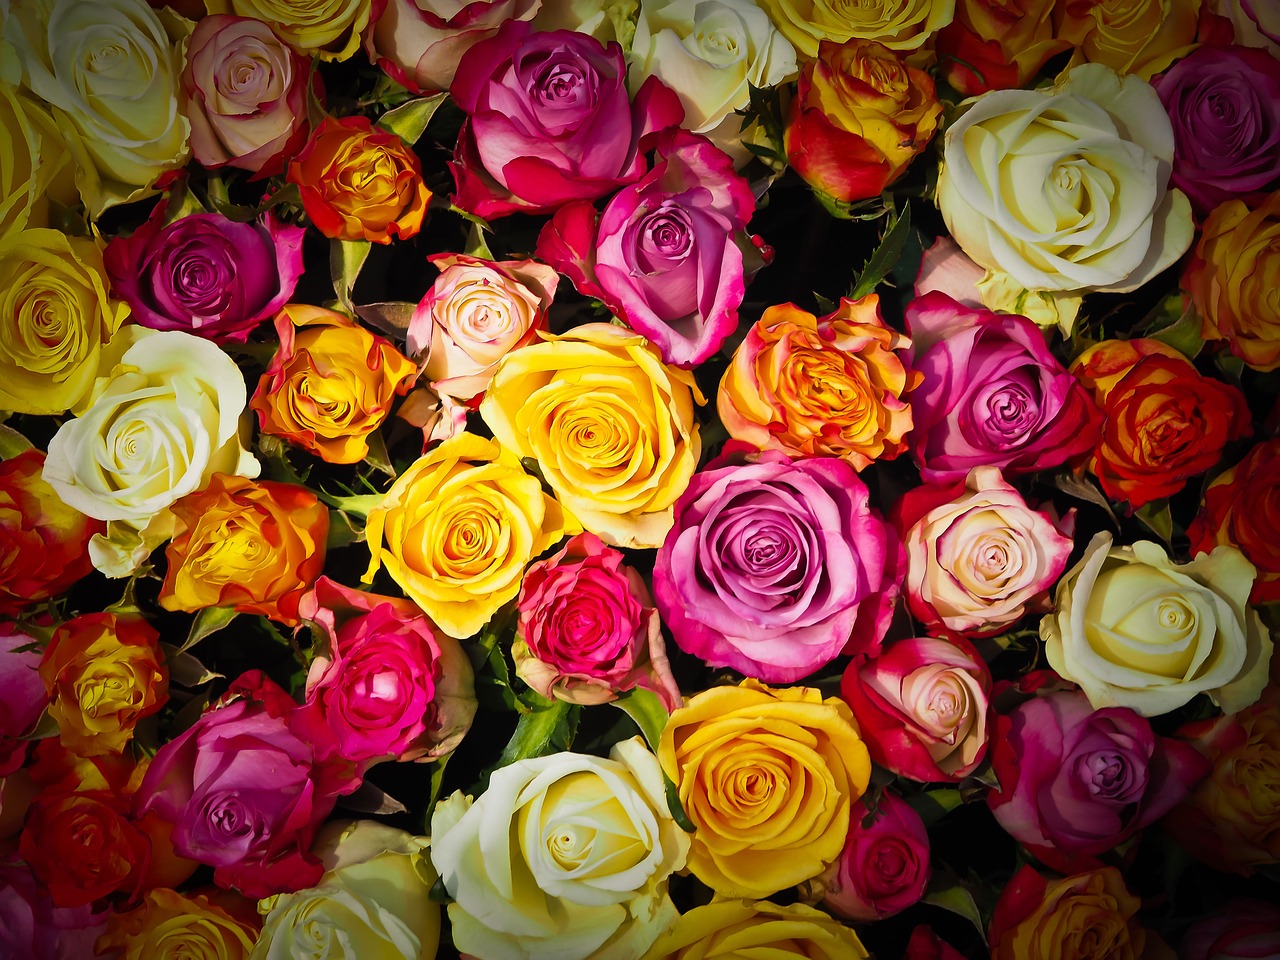 Imieninowa niespodzianka – przesyłki kwiatowe. Szybka dostawa kwiatów – Kwiaciarnia Olsztyn